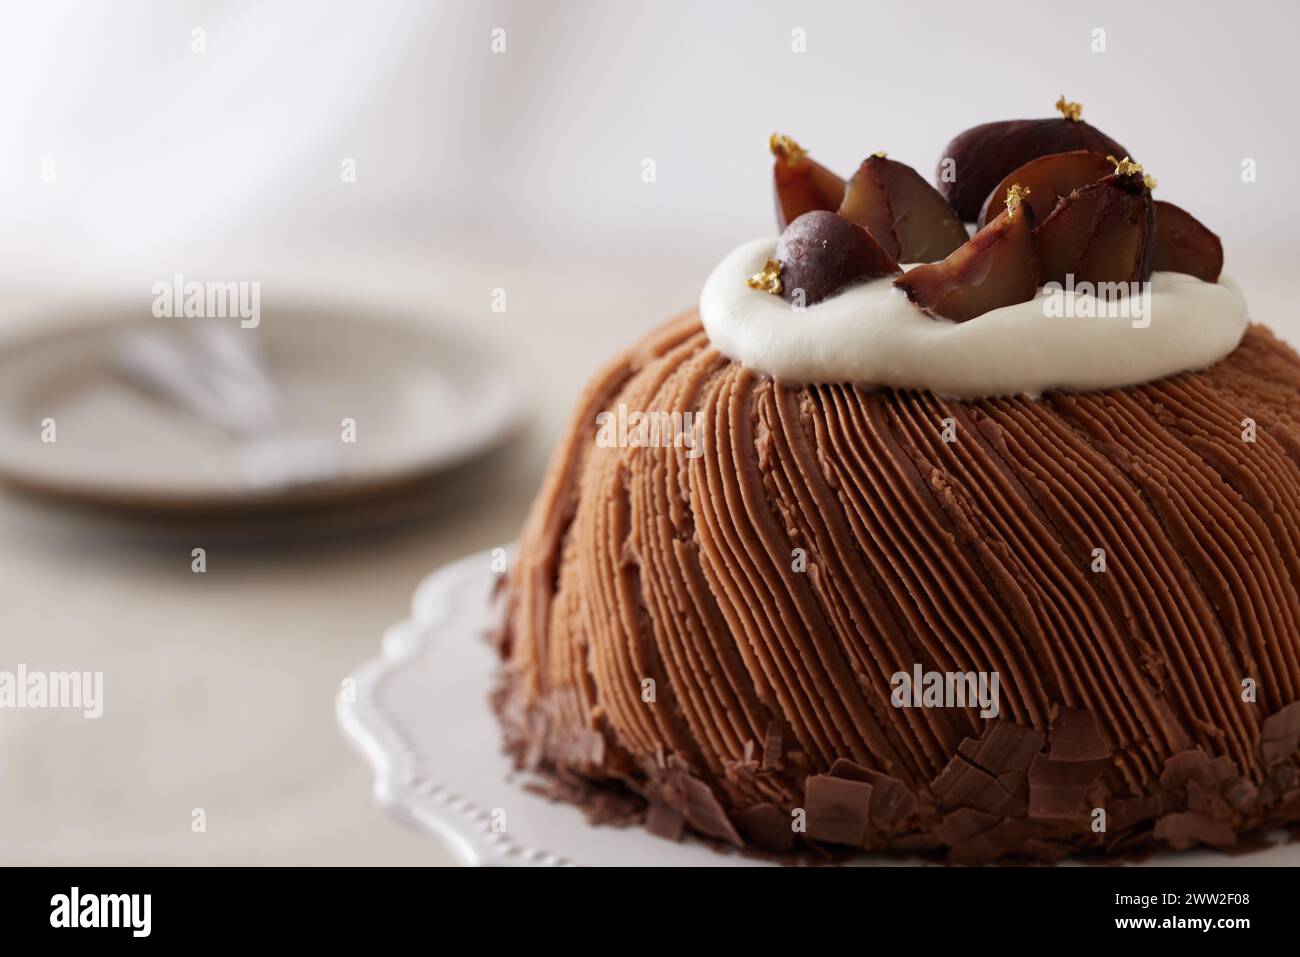 Un gâteau sur une assiette blanche Banque D'Images